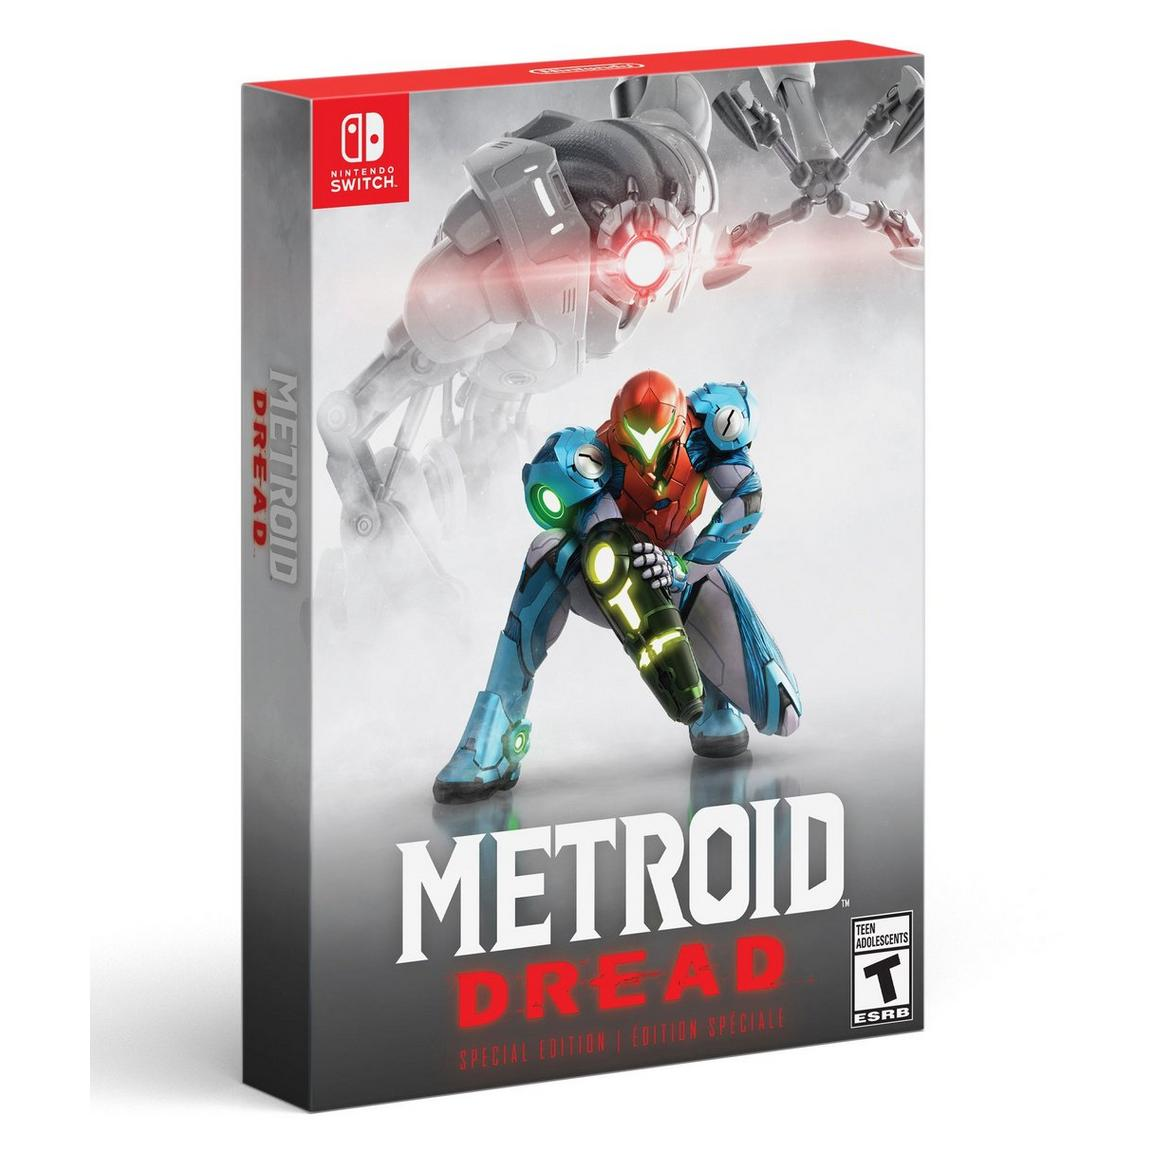 Metroid Dread Edición Especial